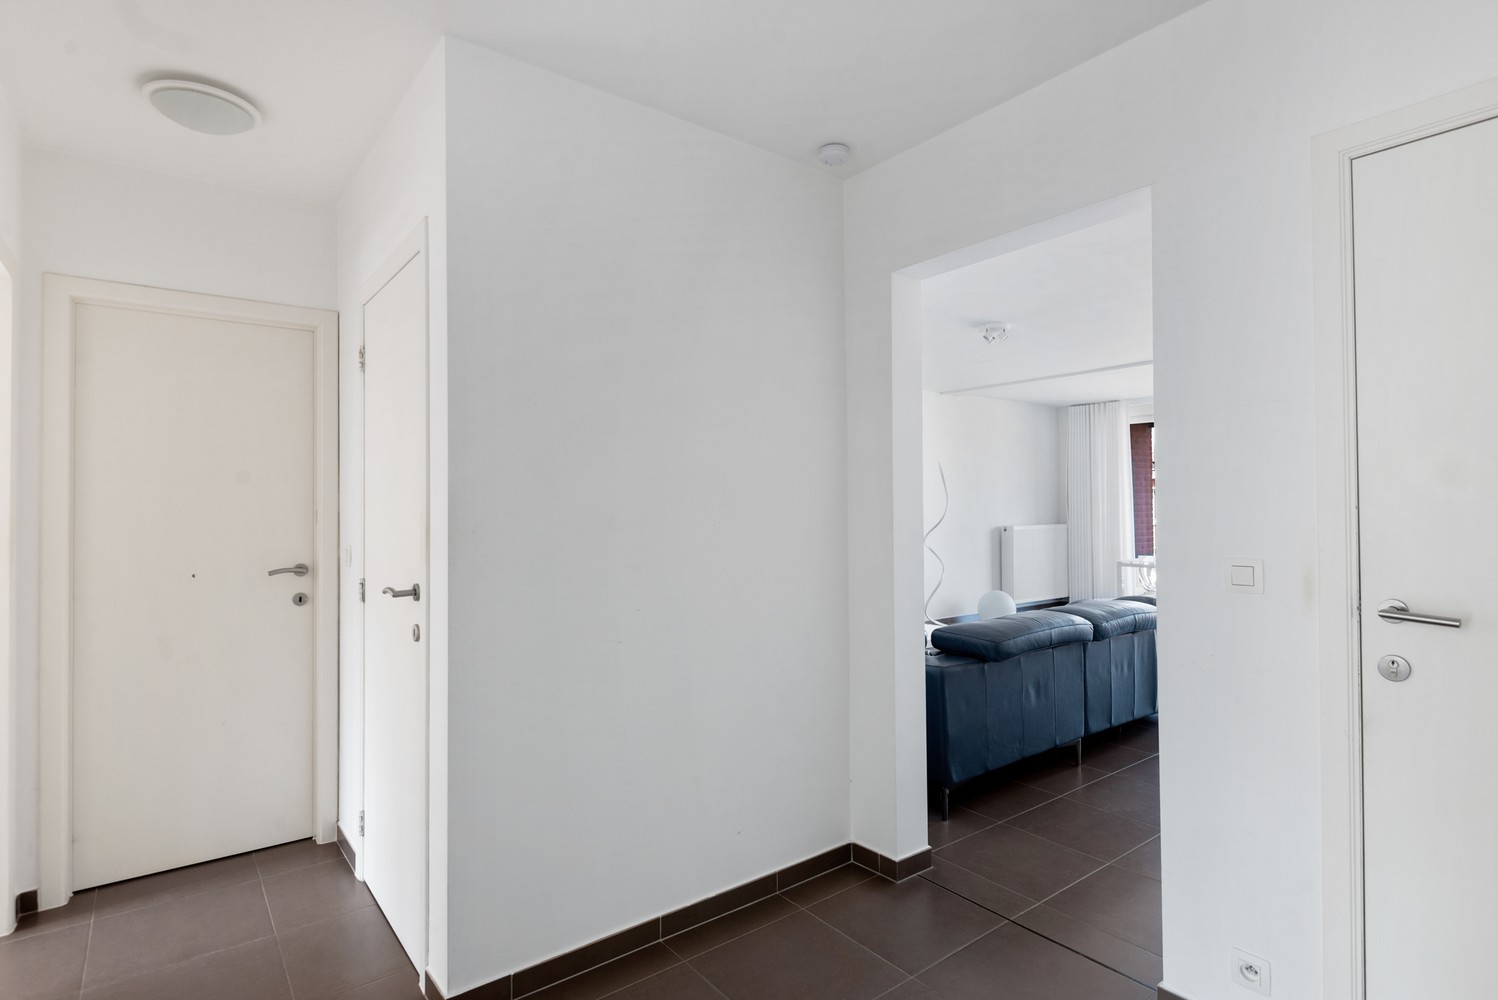 Ruim, lichtrijk & energiezuinig appartement met 2 slaapkamers & zonnig terras in Deurne! afbeelding 10